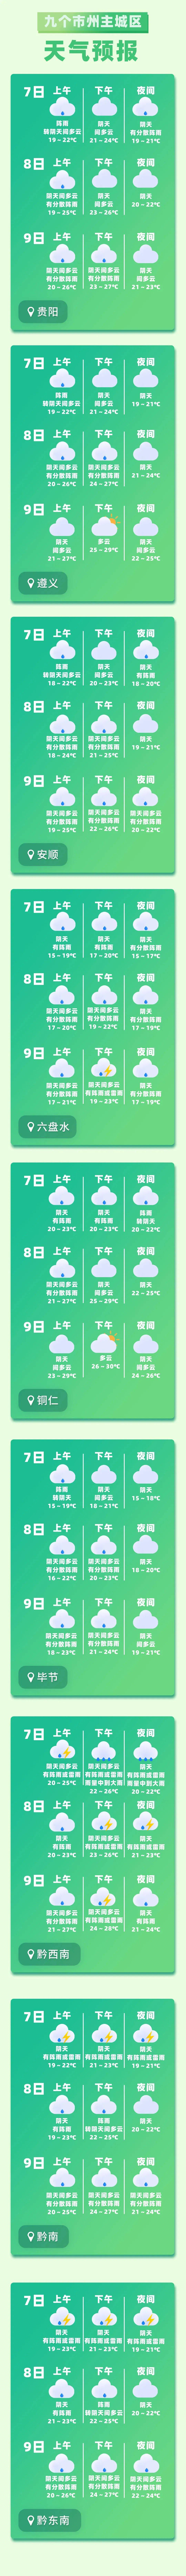 多阵雨或雷雨!贵州高考天气预报